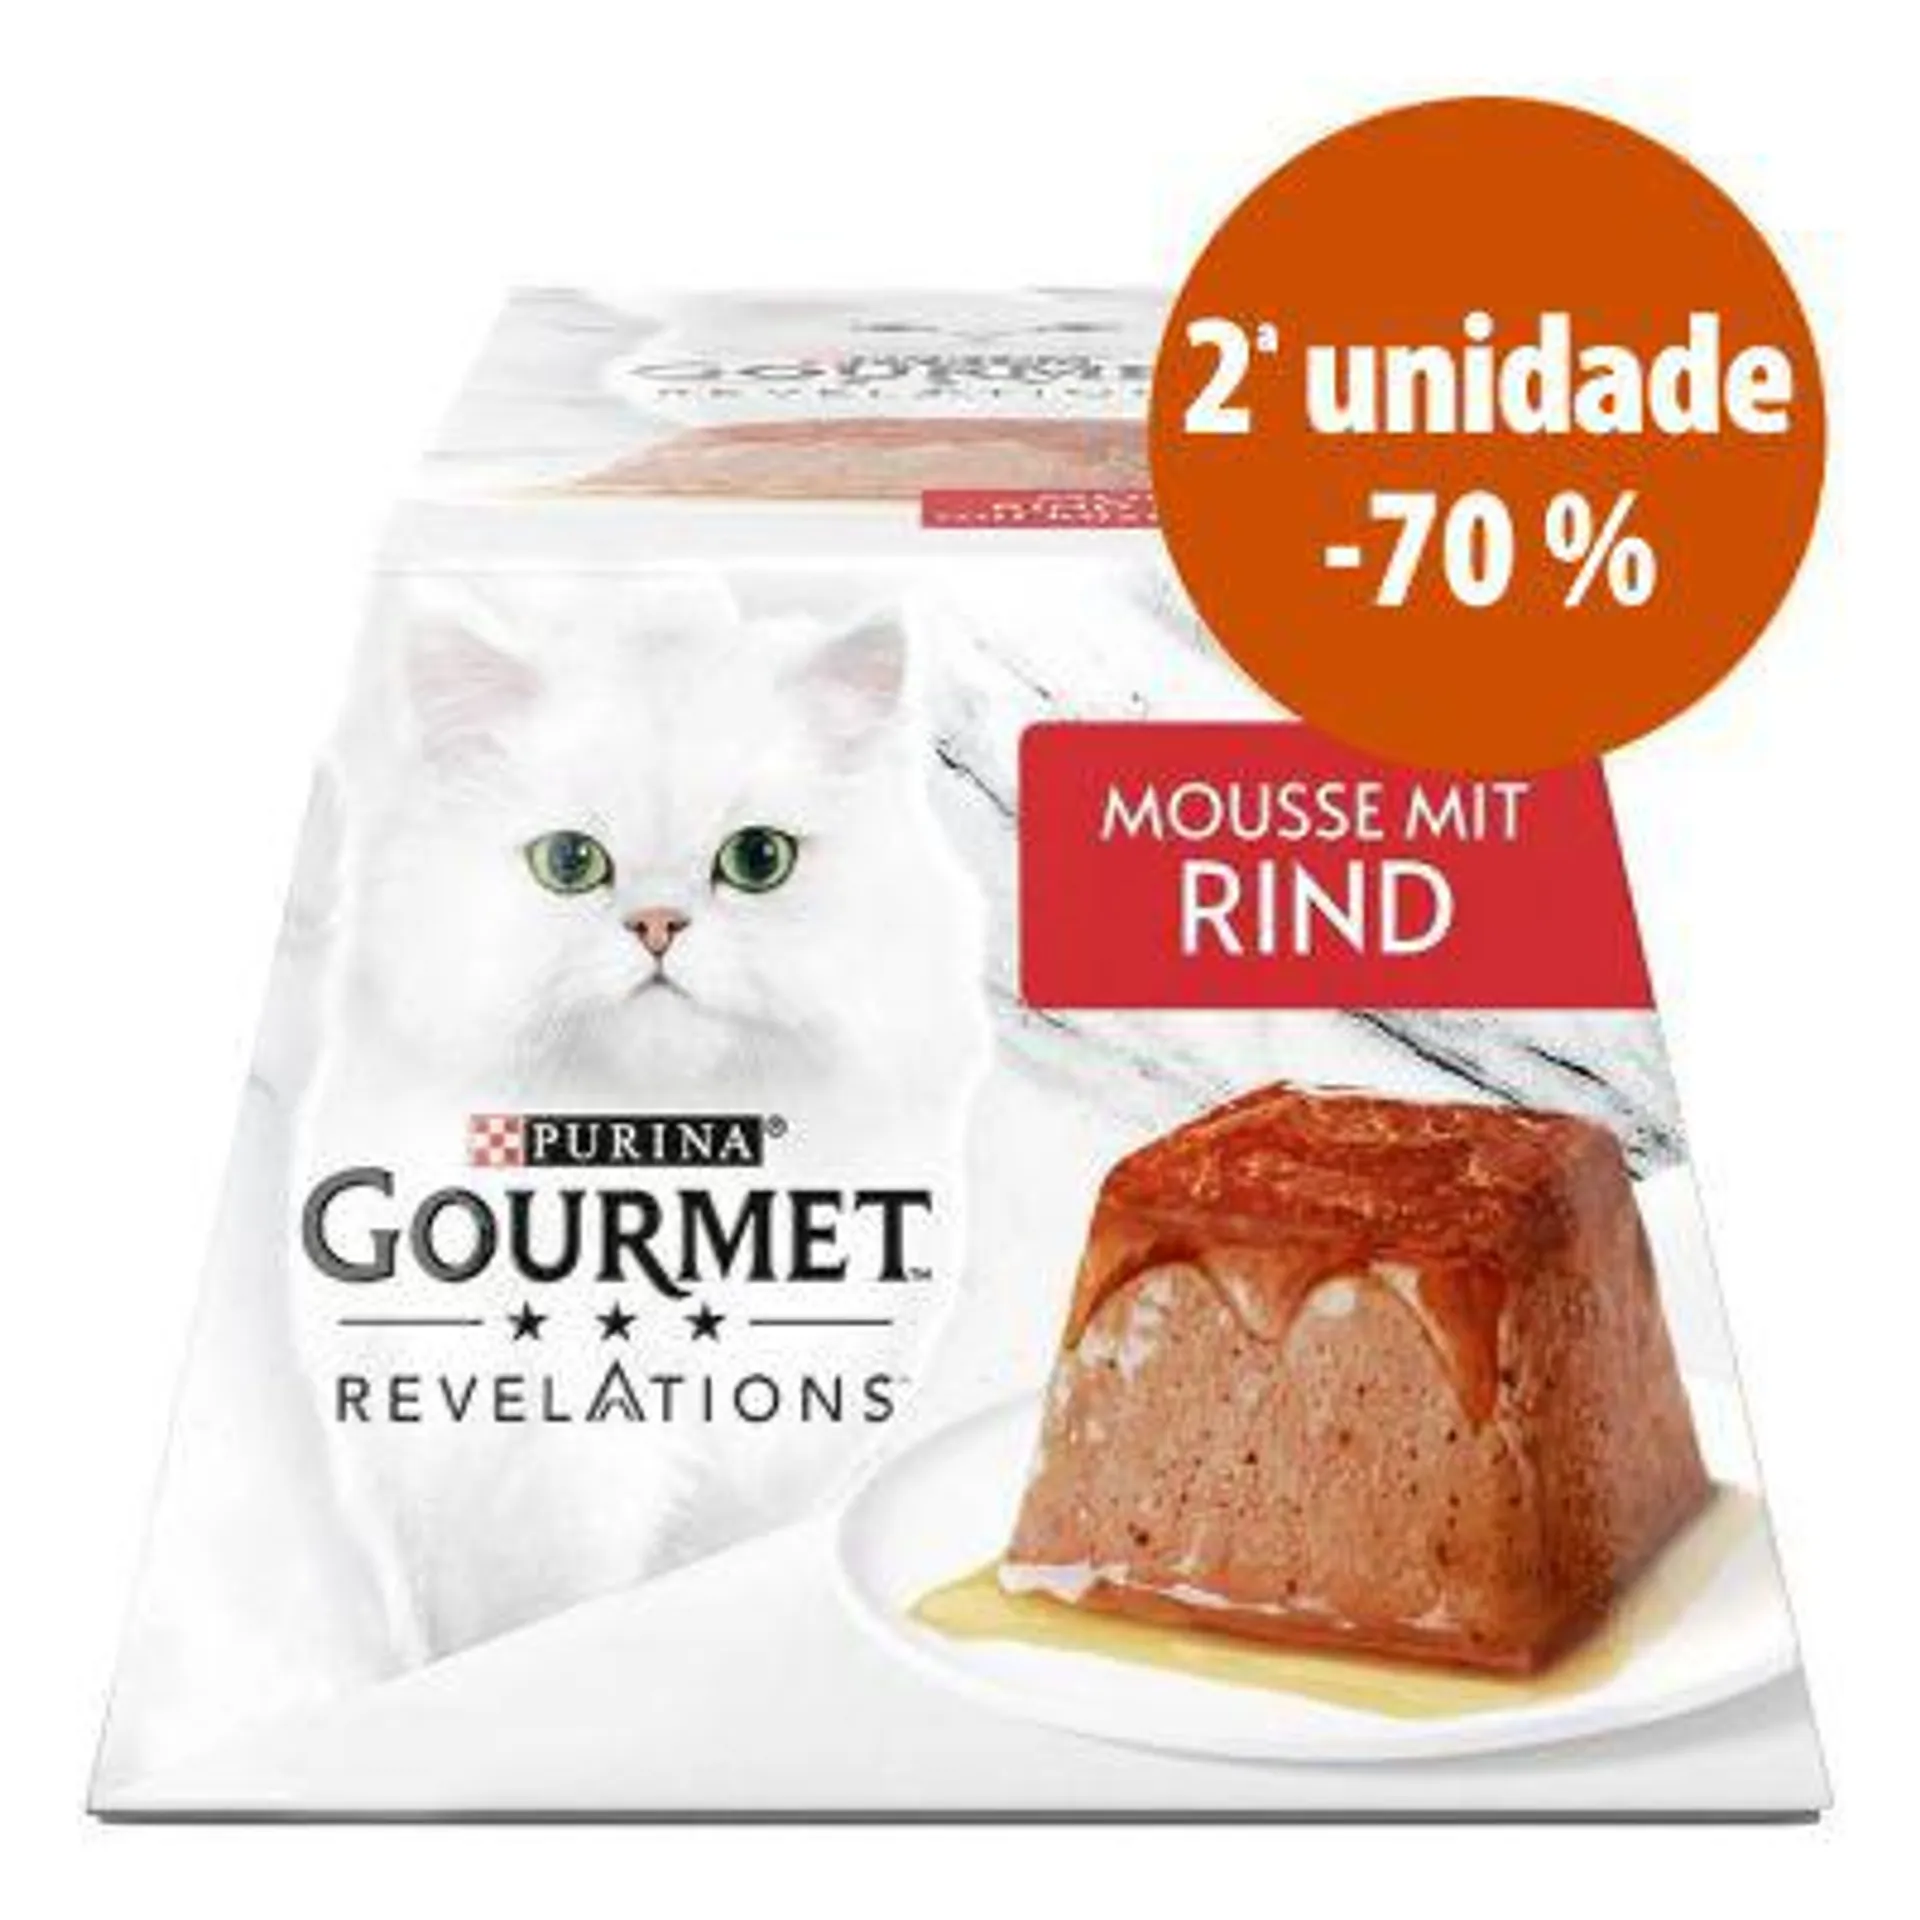 Gourmet Revelations Mousse em promoção: - 70 % na segunda unidade